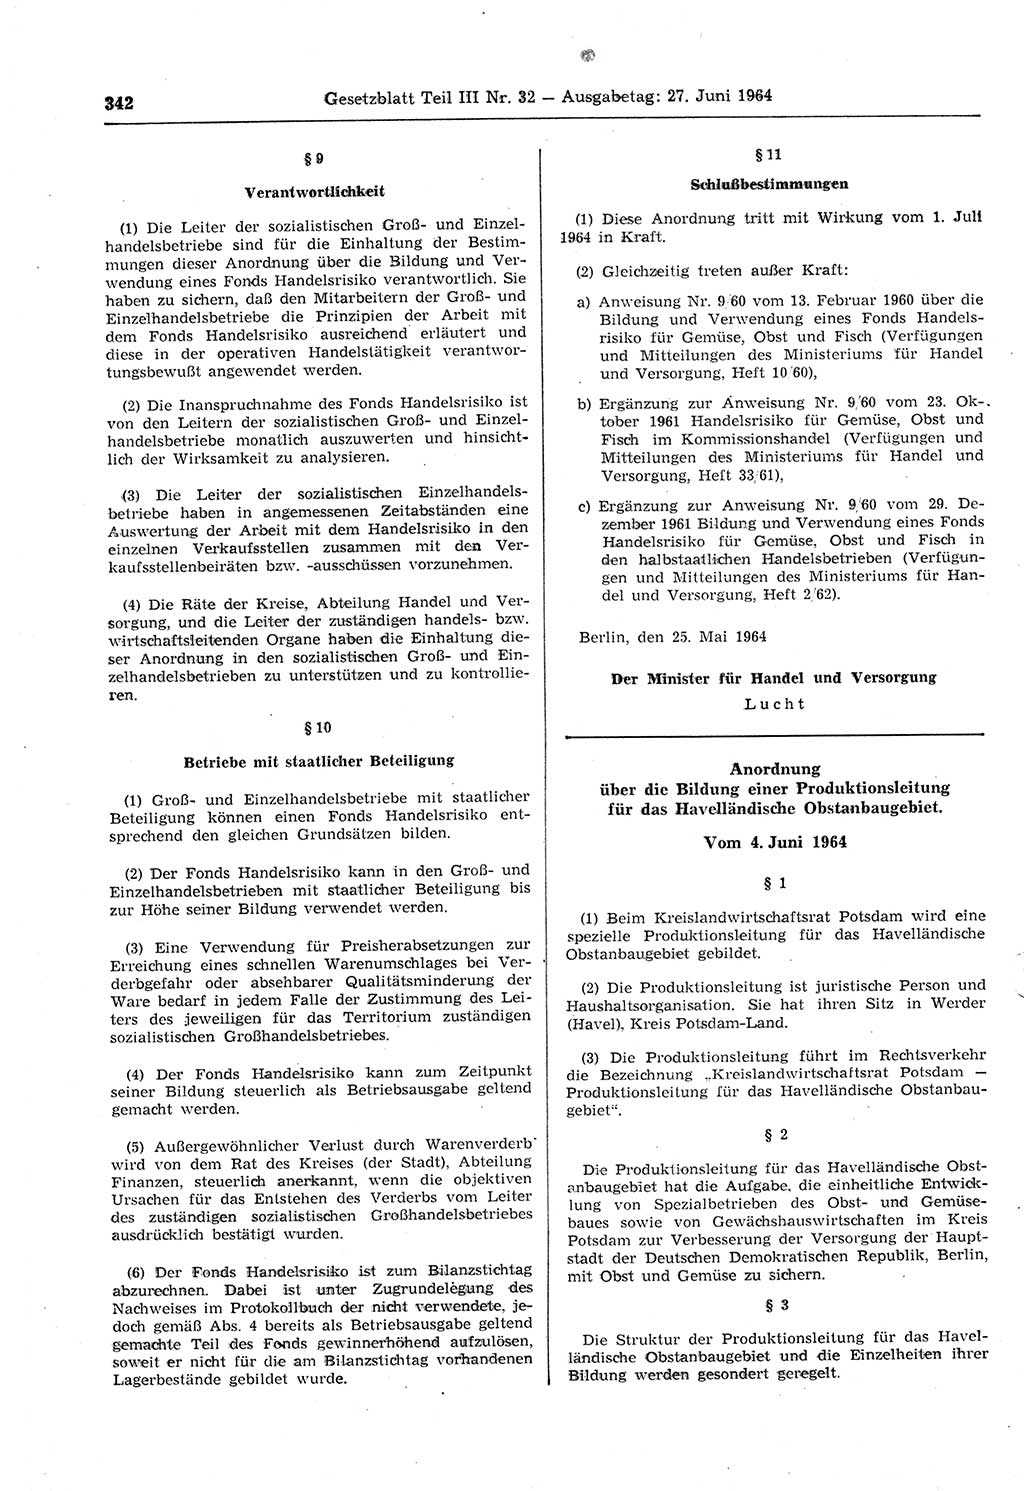 Gesetzblatt (GBl.) der Deutschen Demokratischen Republik (DDR) Teil ⅠⅠⅠ 1964, Seite 342 (GBl. DDR ⅠⅠⅠ 1964, S. 342)